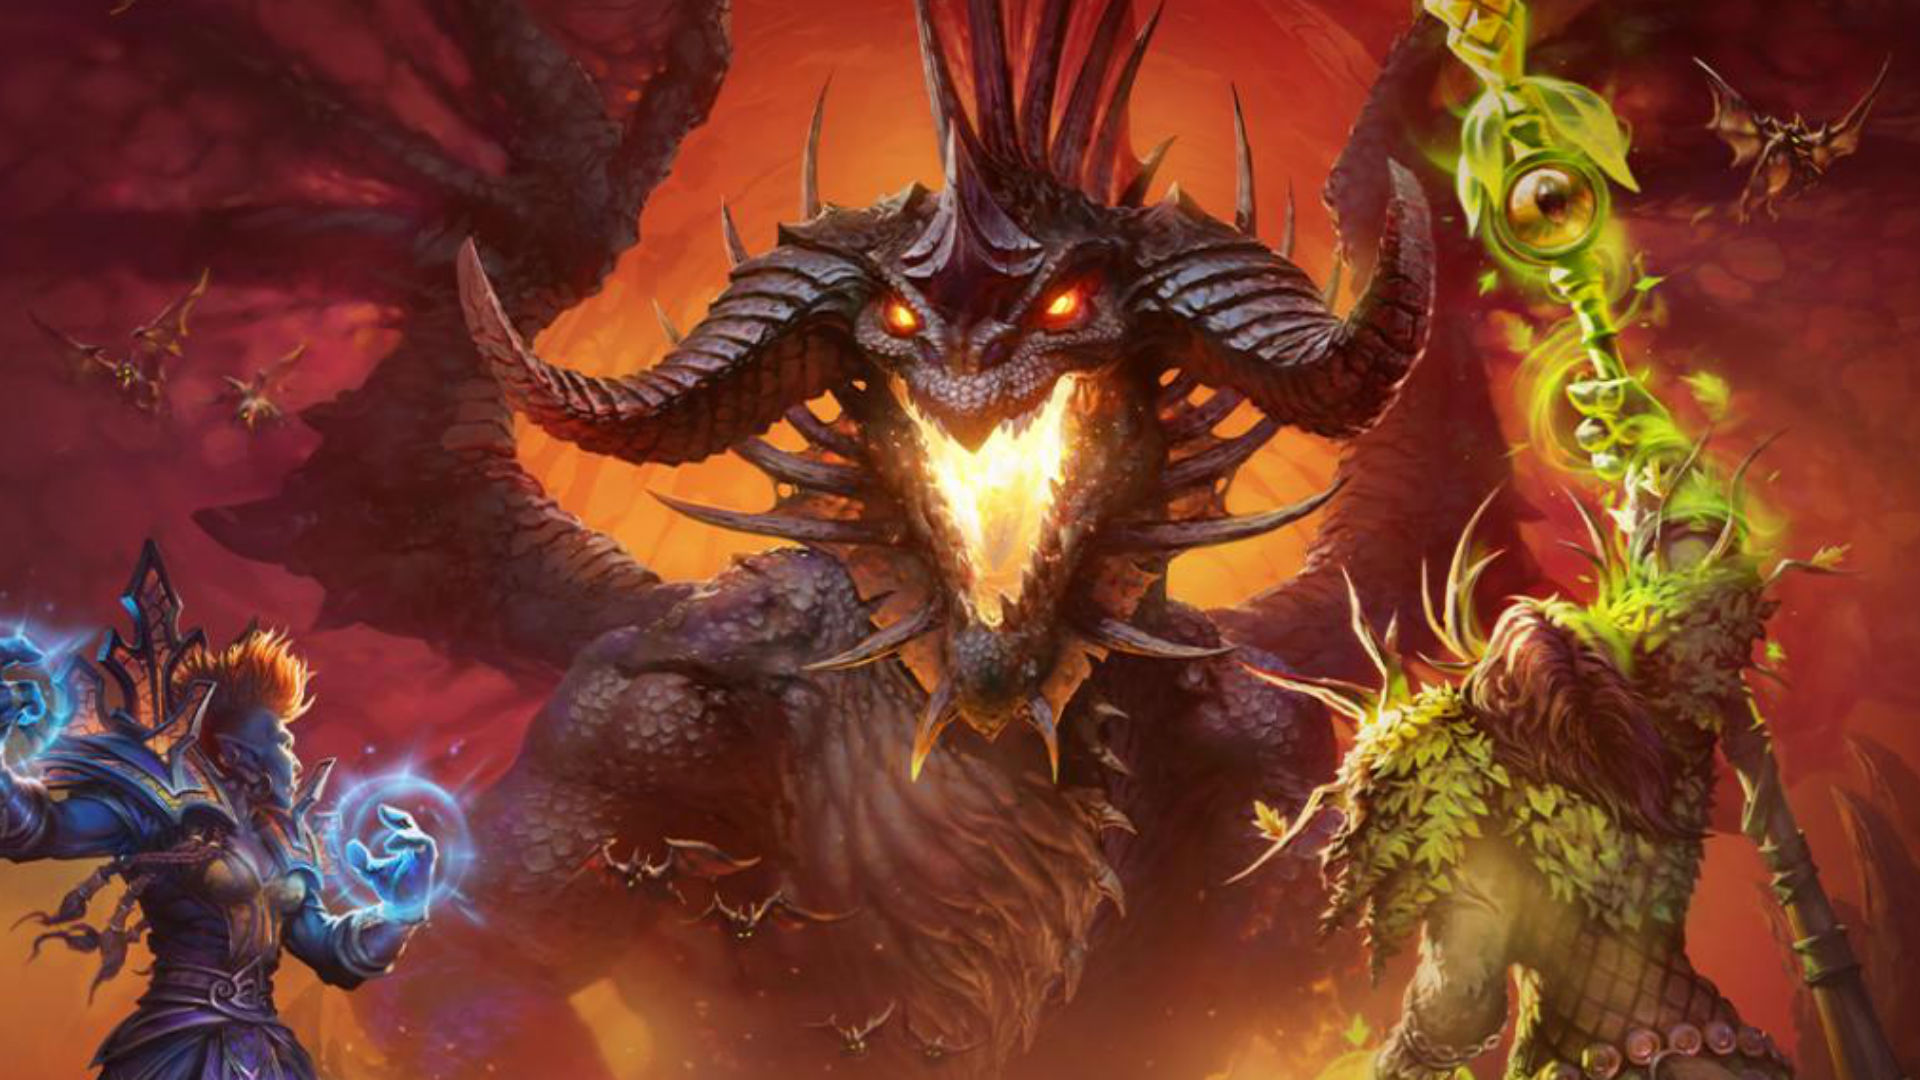 stå på række Berolige Wardian sag WoW Classic guide: beginner's tips list for classic World of Warcraft | PC  Gamer